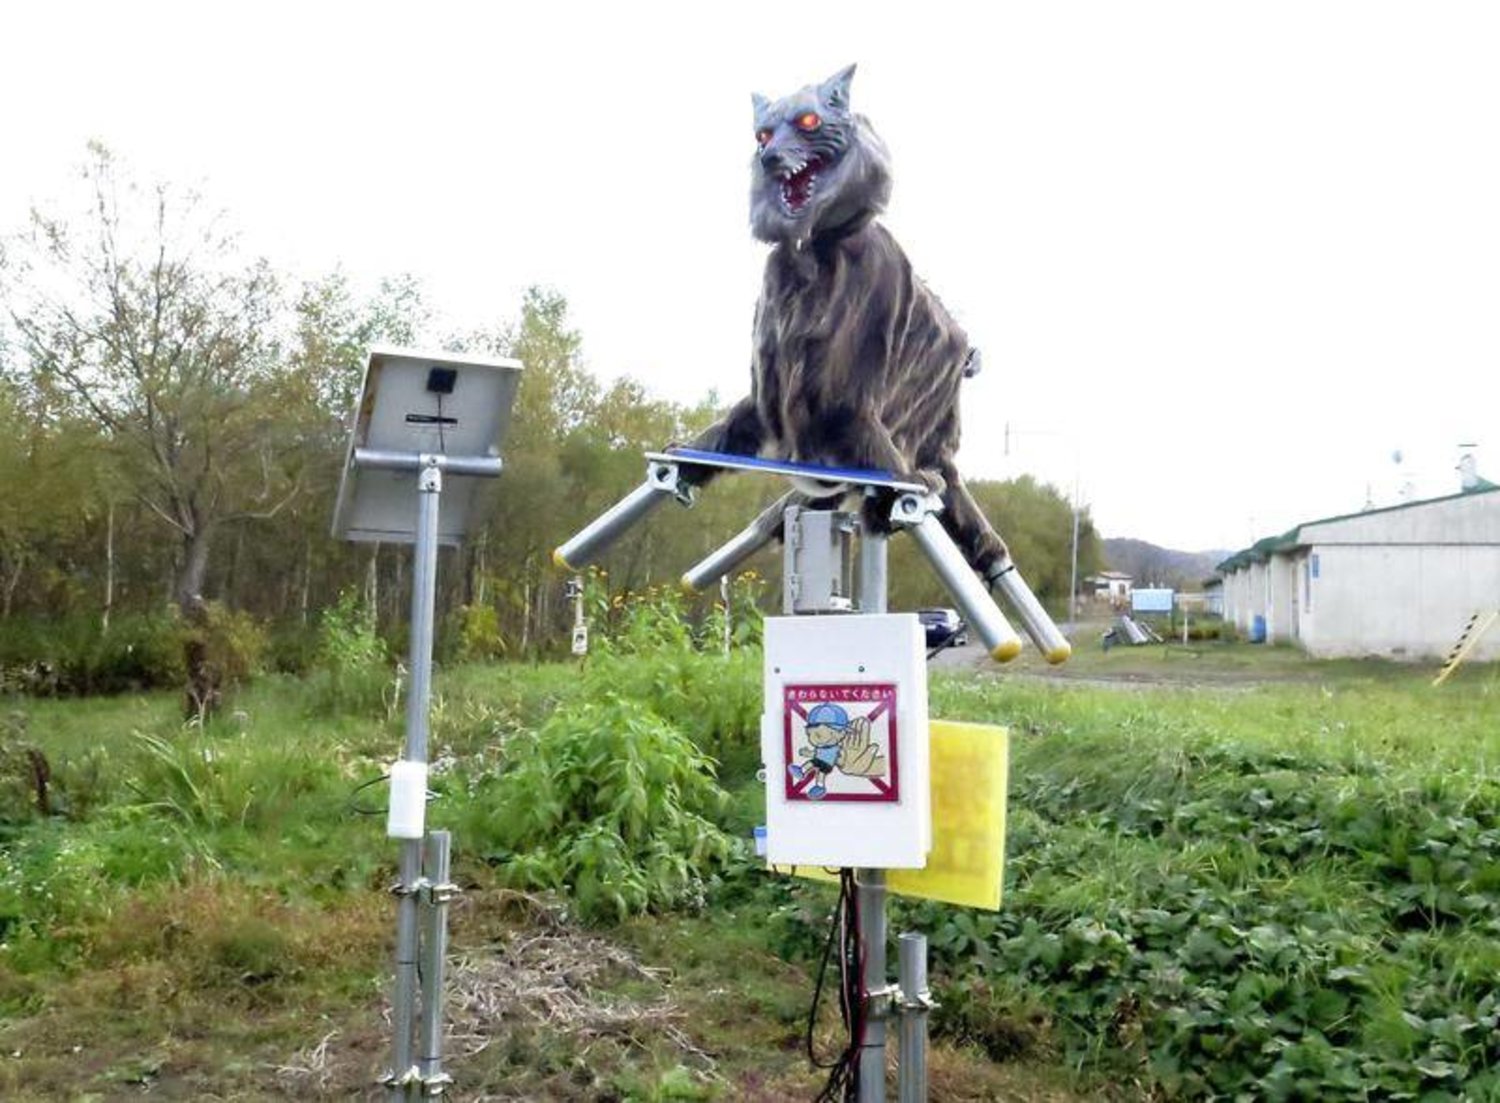 أحد «الذئاب الروبوتية» التي نشرتها السلطات اليابانية مؤخراً في البلاد (رويترز)